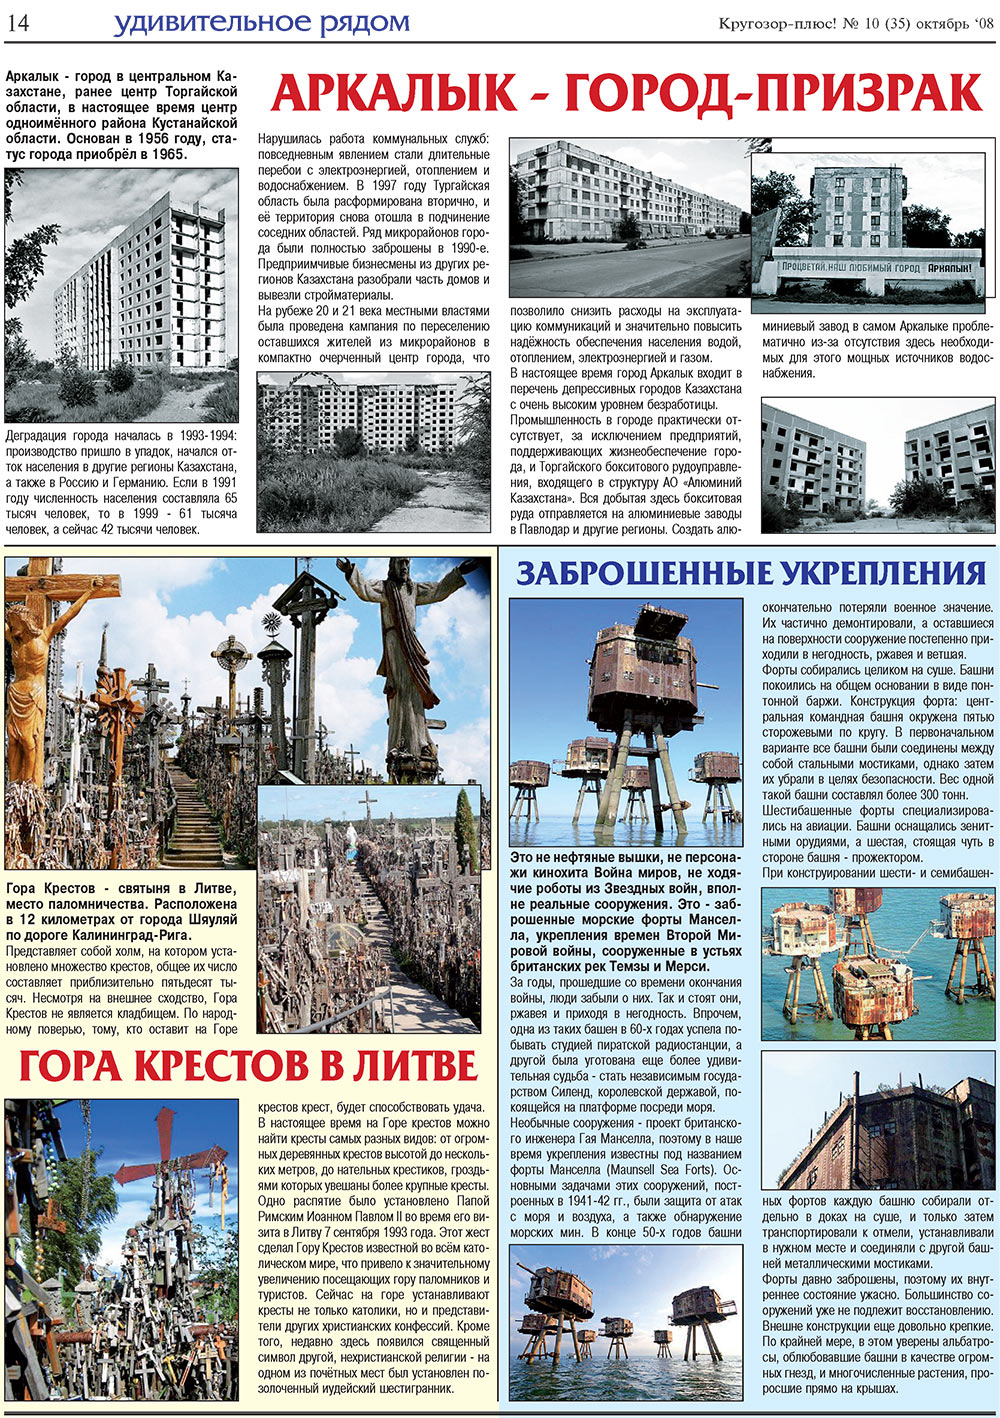 Кругозор плюс!, газета. 2008 №10 стр.14